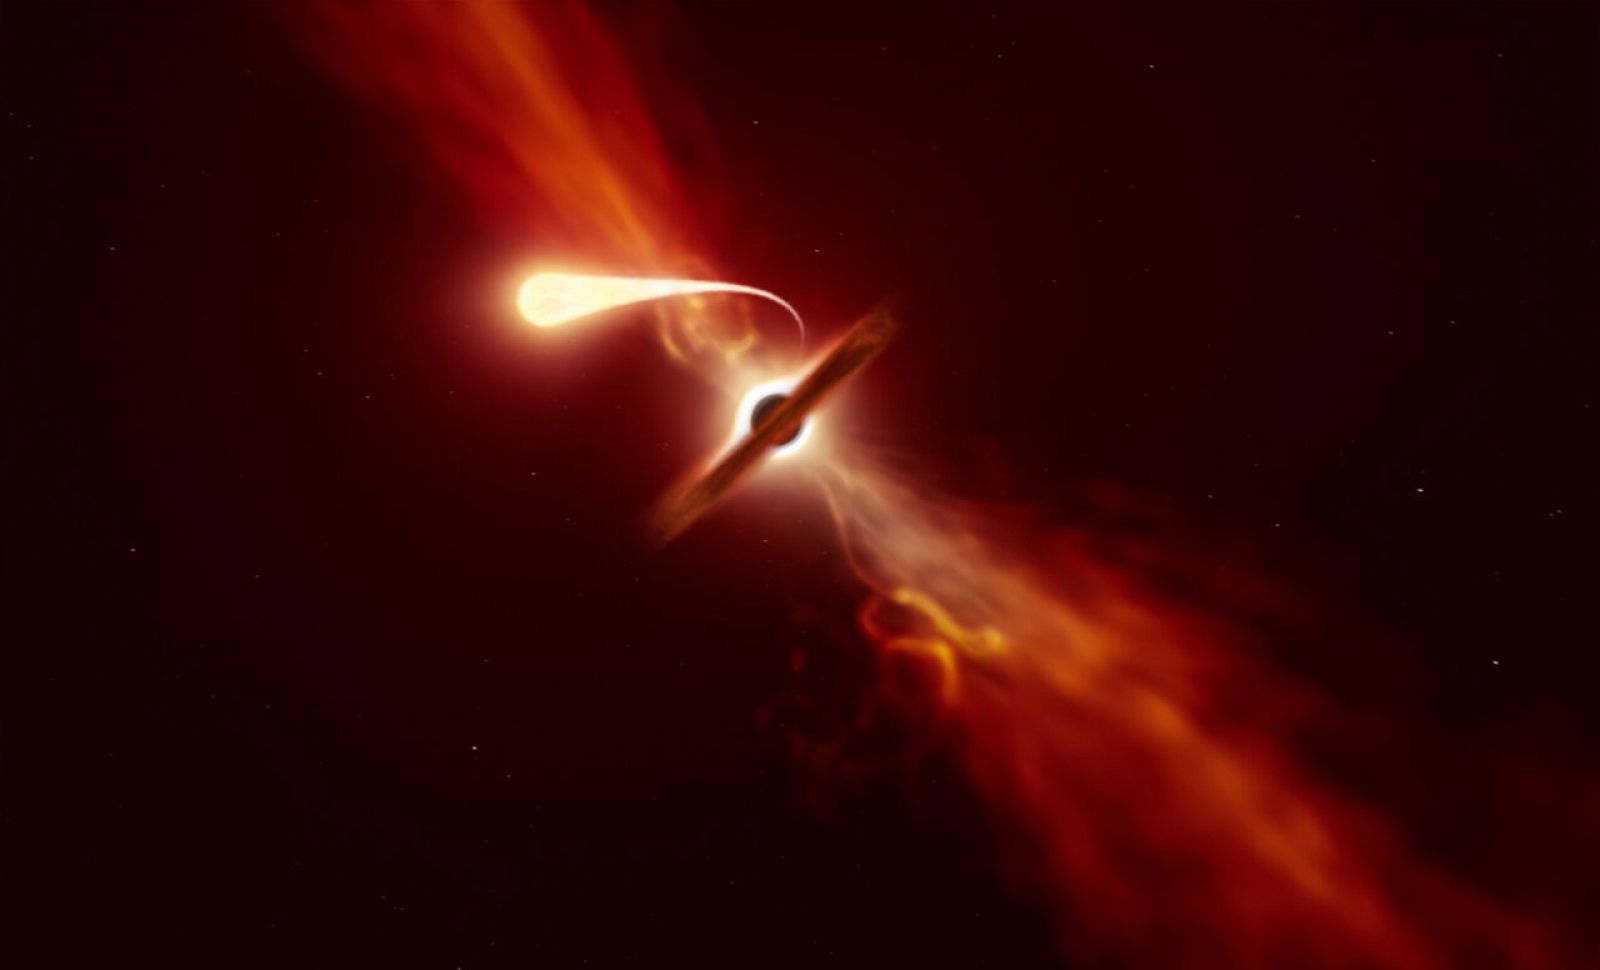  Ilustración de un artista del momento en el que un agujero negro engulle una estrella